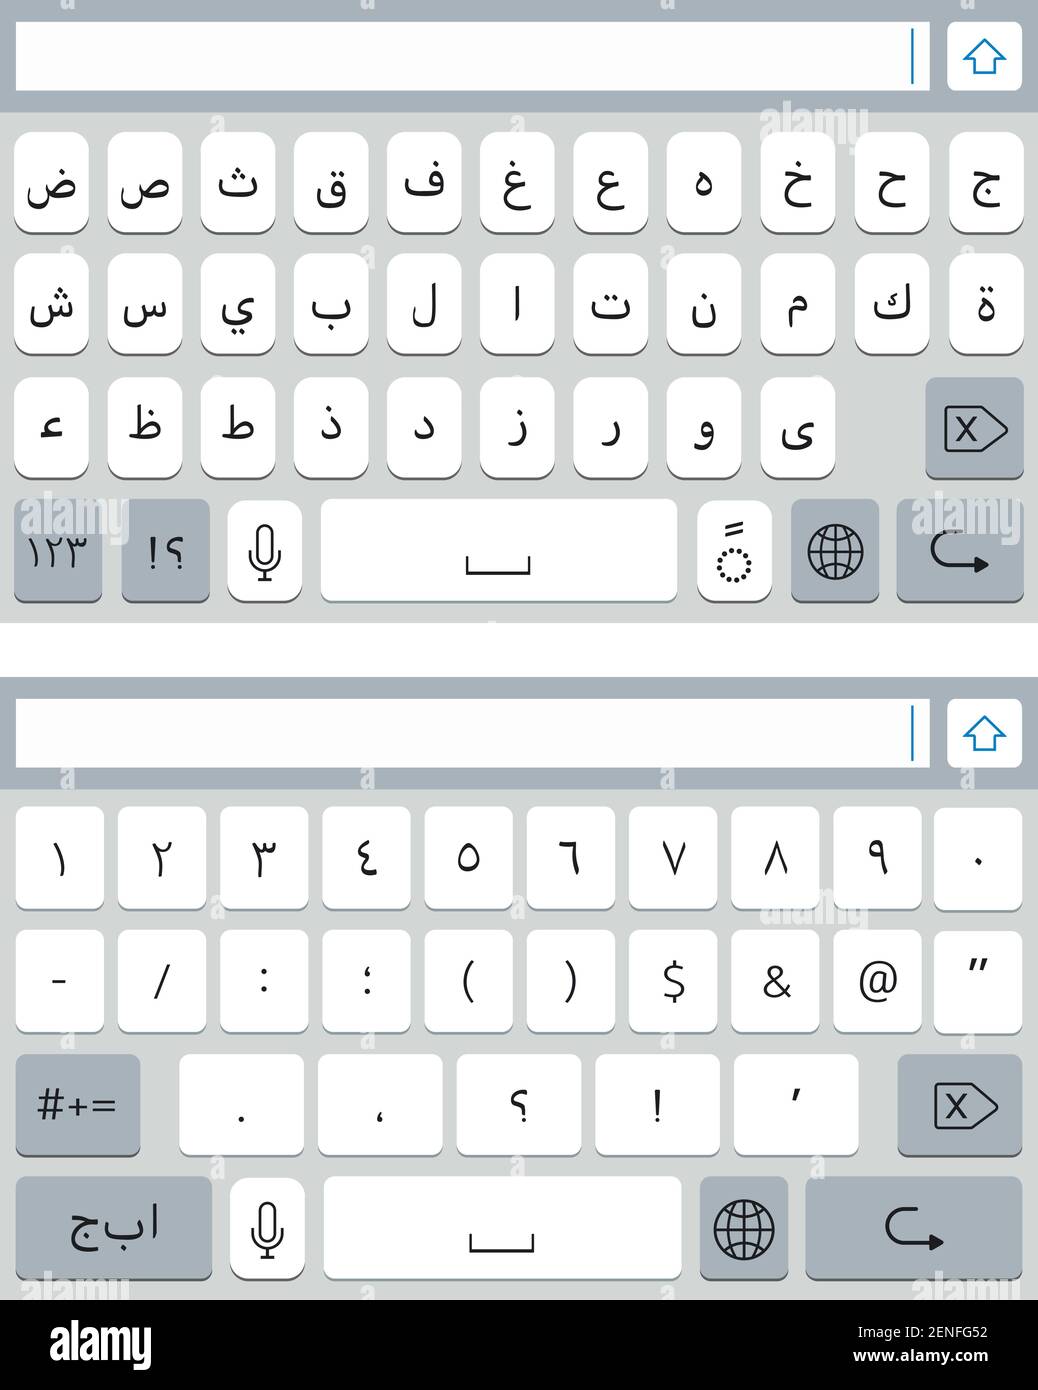 Tastiera virtuale araba per smartphone. Mockup tastiera del telefono cellulare, tasti alfabetici e numeri Illustrazione Vettoriale